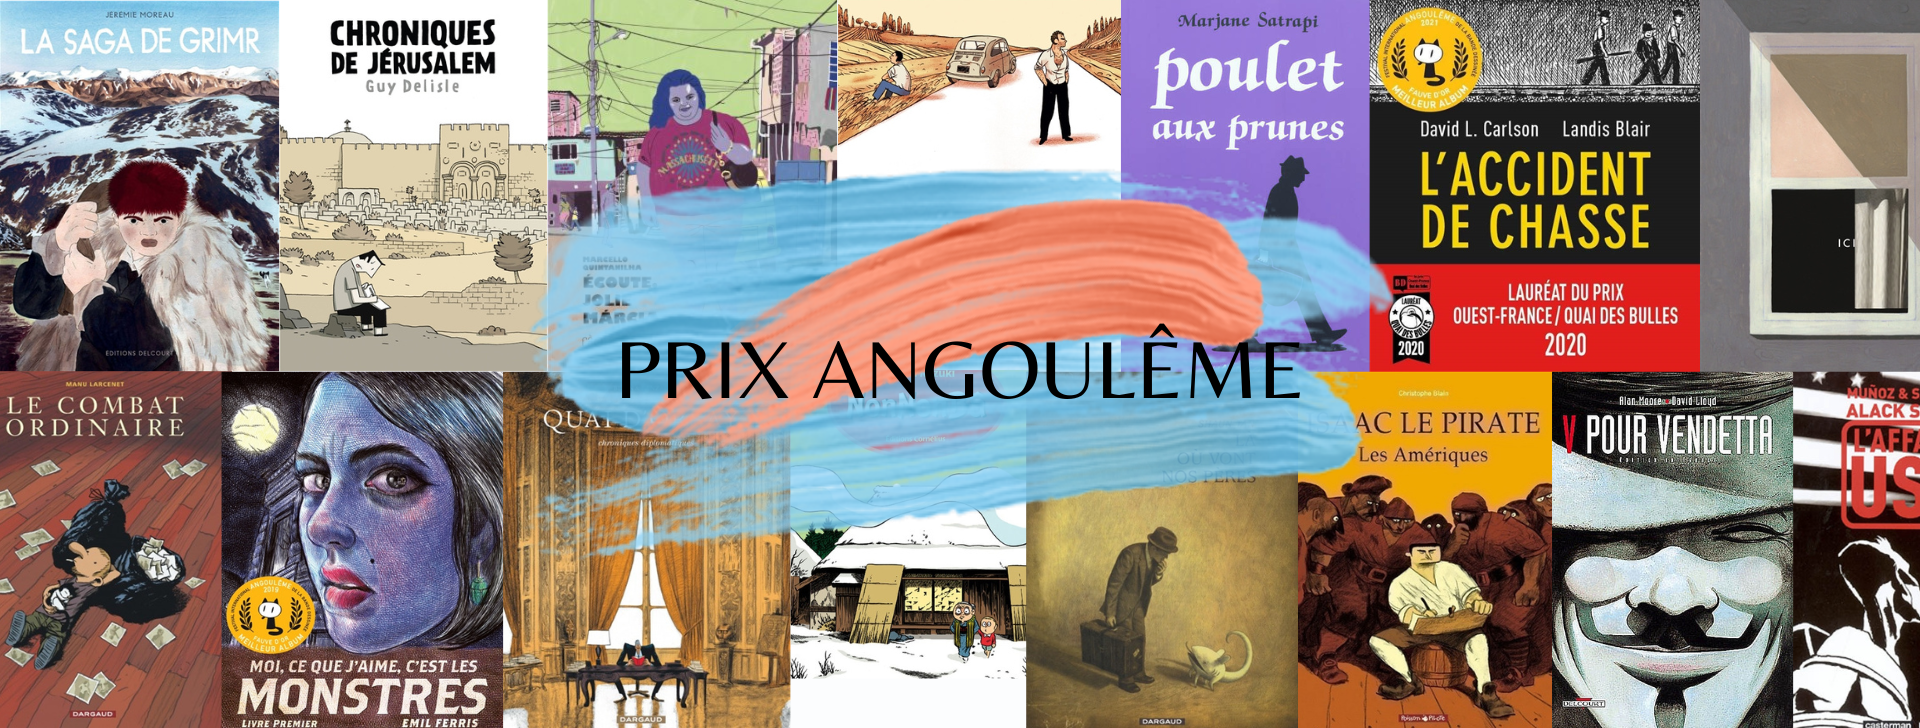 couvertures des BD primées à Angoulême